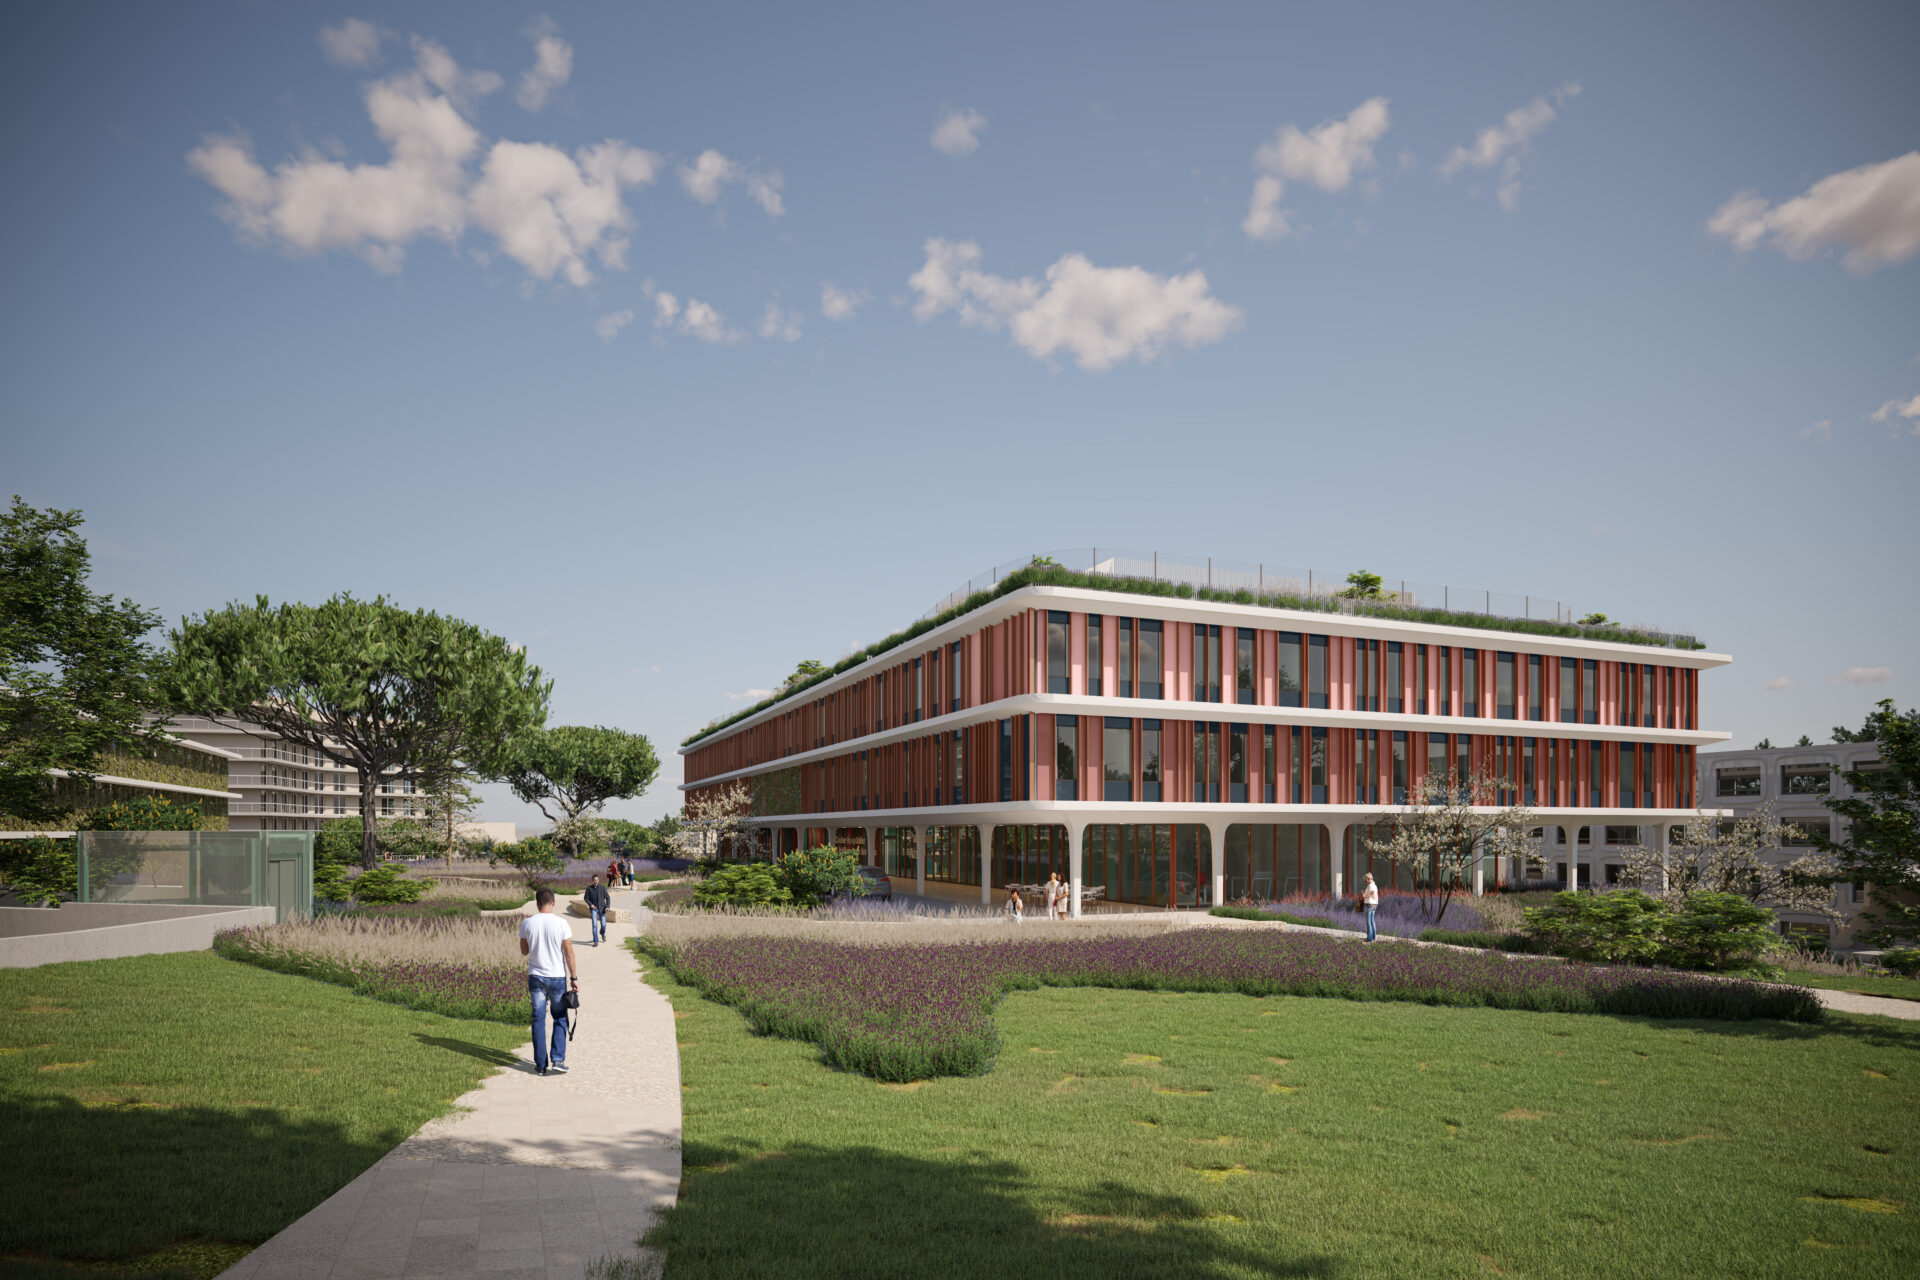 Centre Hospitalier à Antibes vu depuis un parc environnant, mettant en avant l'intégration du bâtiment de santé dans le paysage urbain, conçu par A26 avec un focus sur l'accessibilité et la sécurité hospitalière.